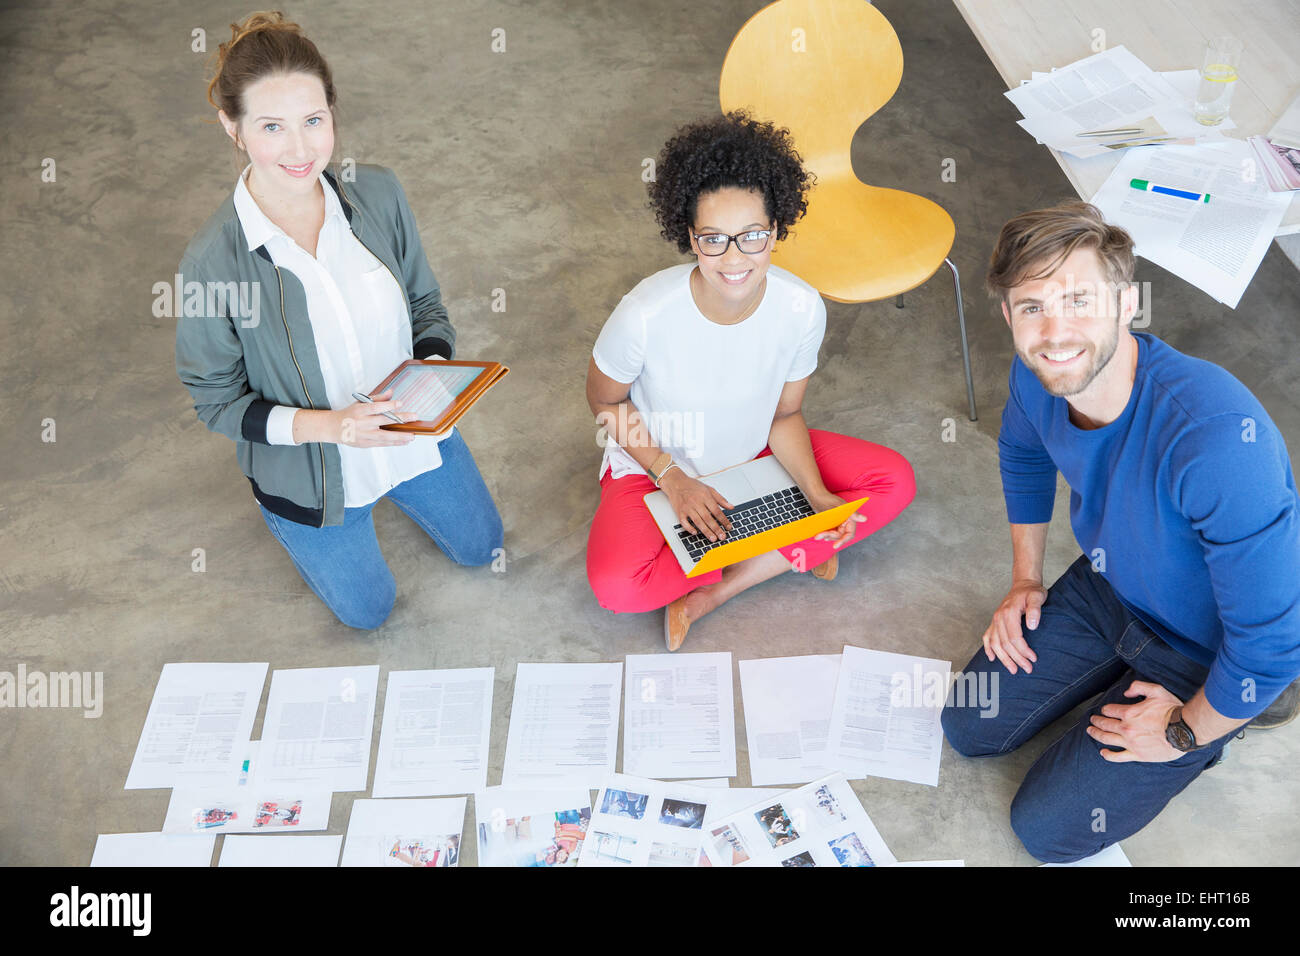 Porträt von drei jungen Leuten am Boden sitzen und arbeiten zusammen im studio Stockfoto